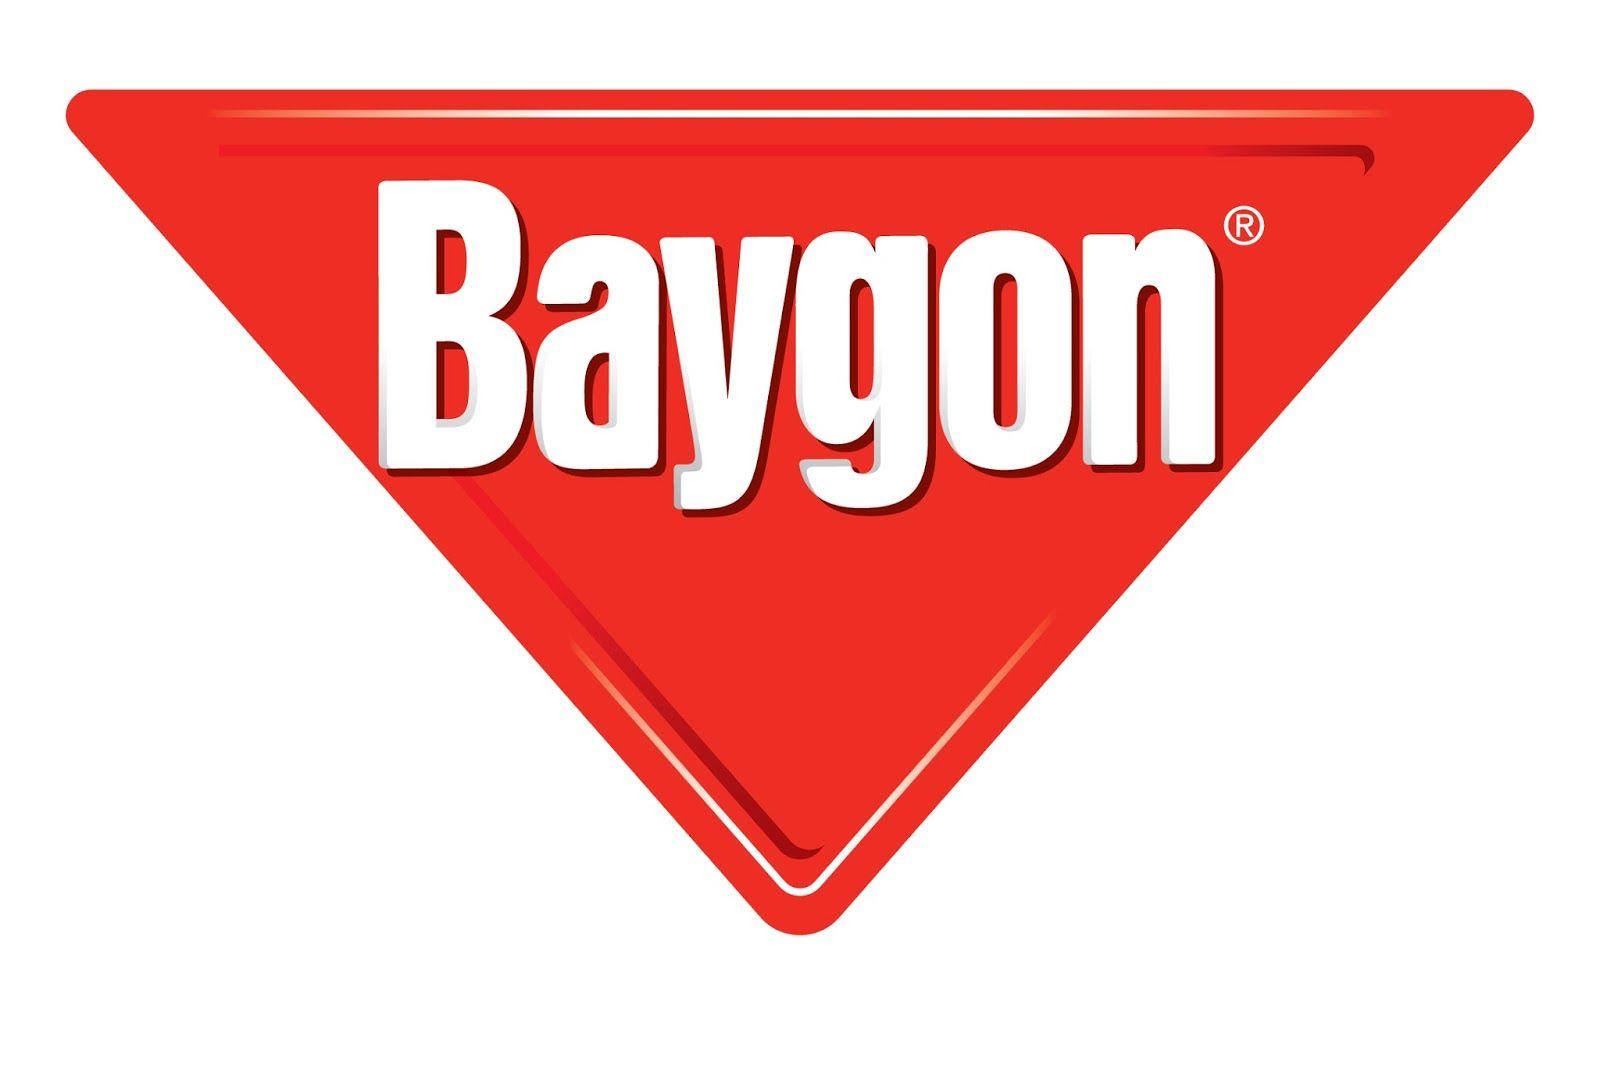 Baygon Logo - Baygon | Logopedia | FANDOM powered by Wikia